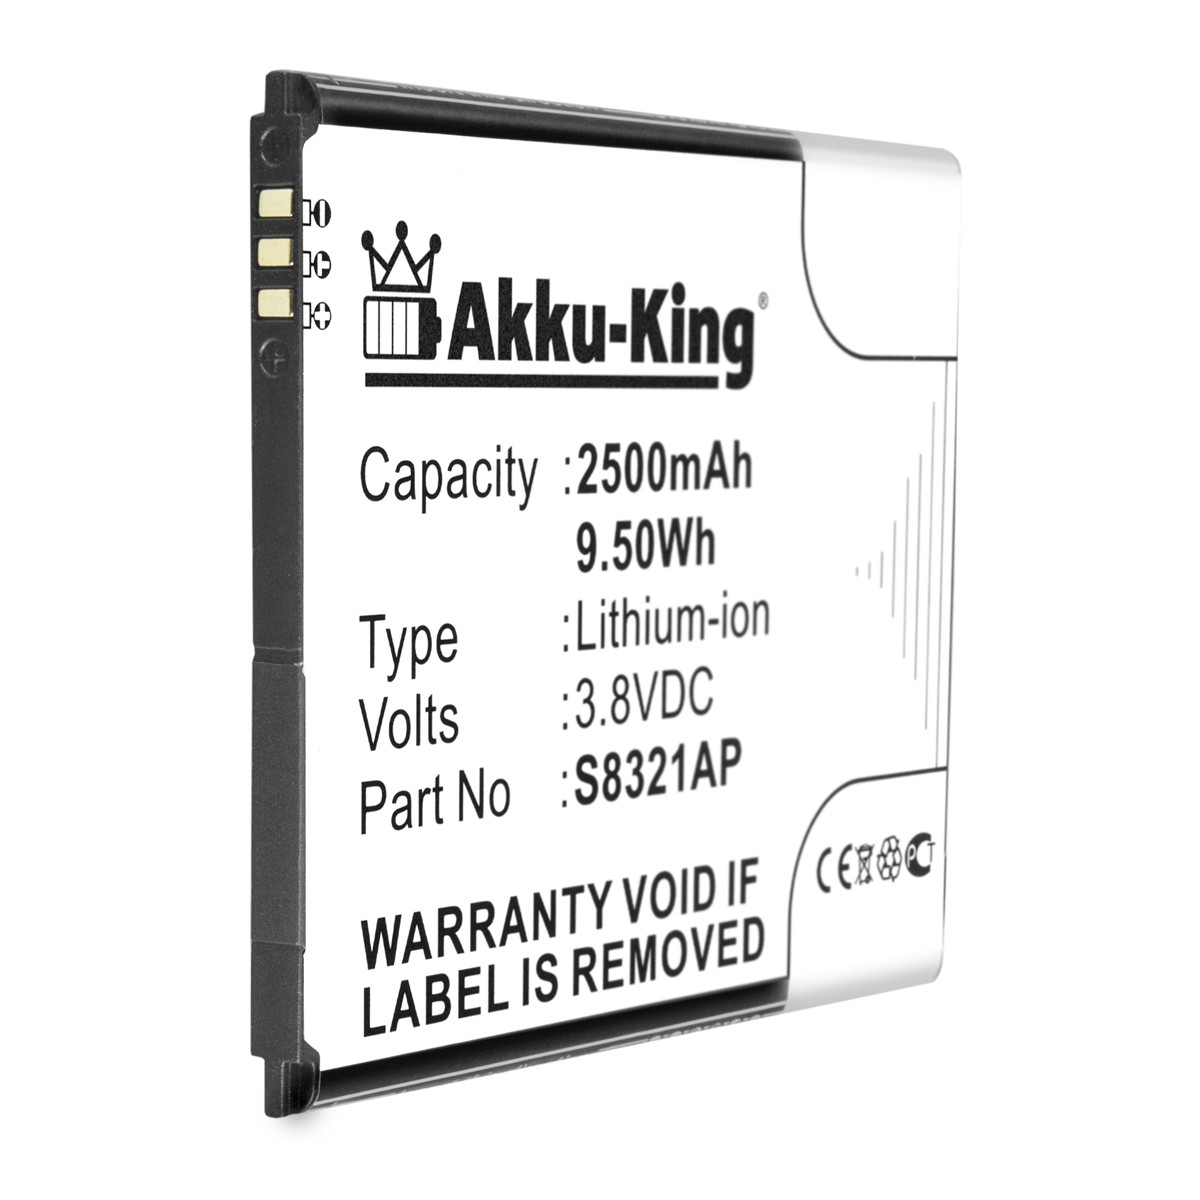 AKKU-KING Akku kompatibel Li-Ion Volt, 2500mAh Wiko mit S8321AP Handy-Akku, 3.8